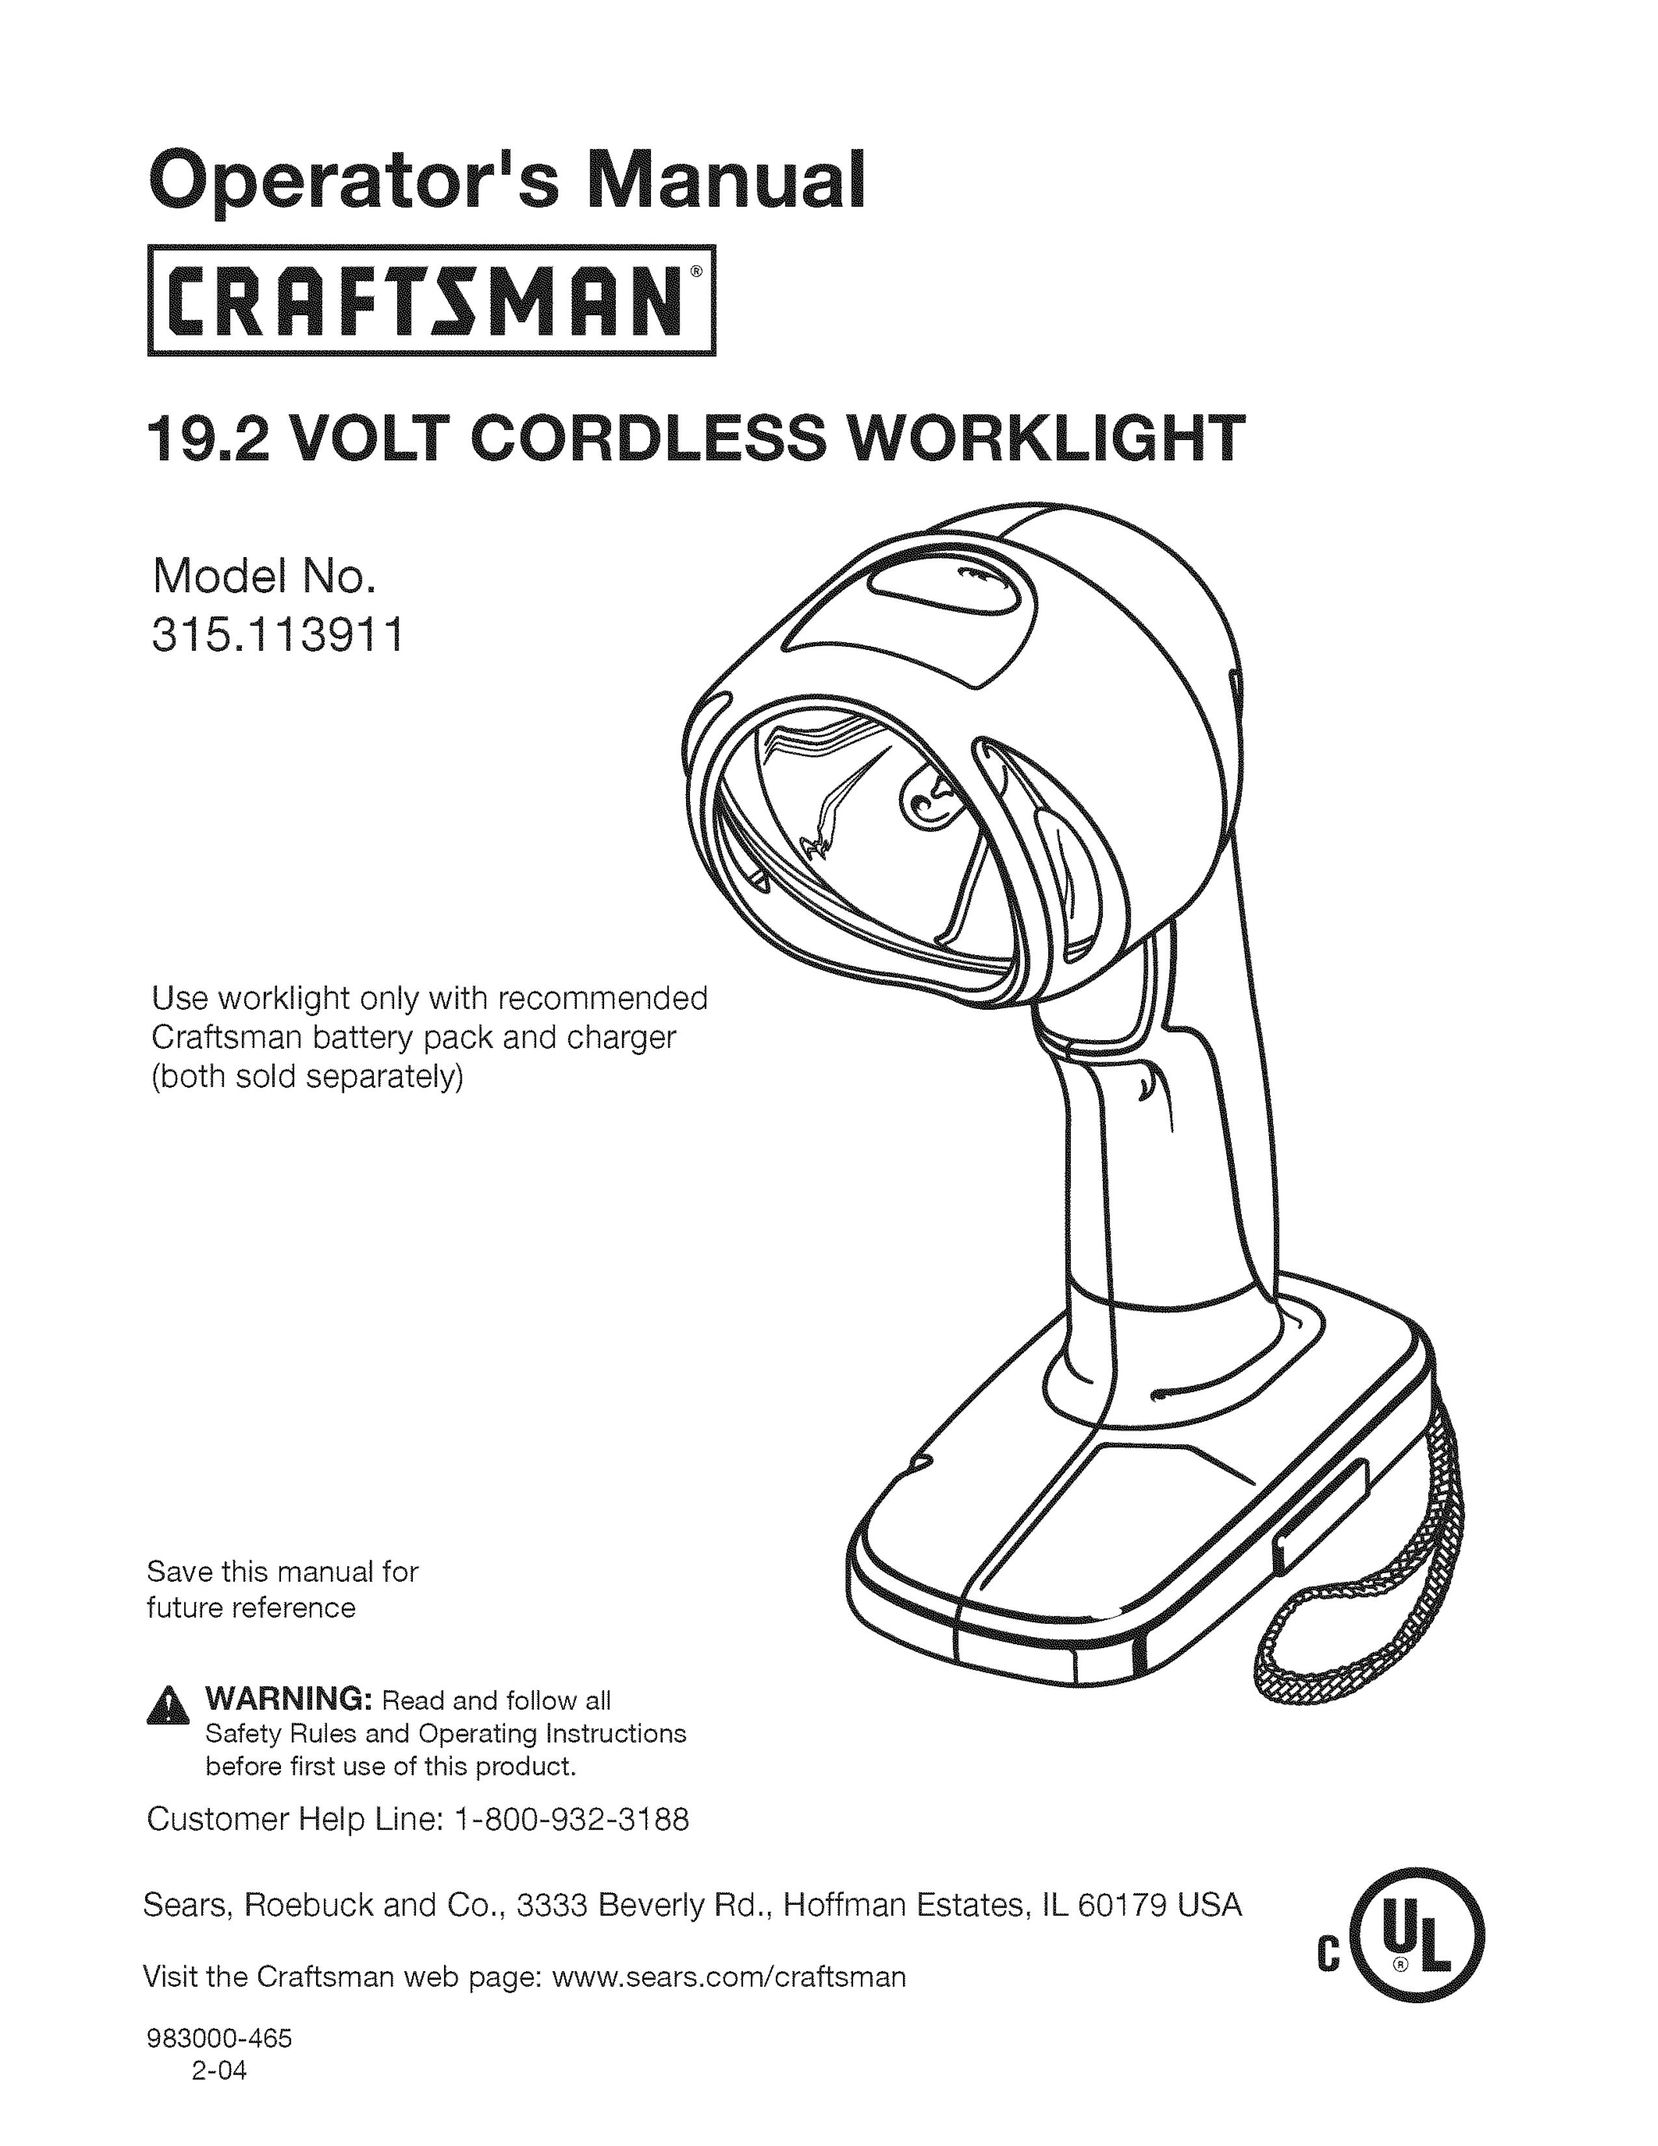 Craftsman 315.113911 Work Light User Manual